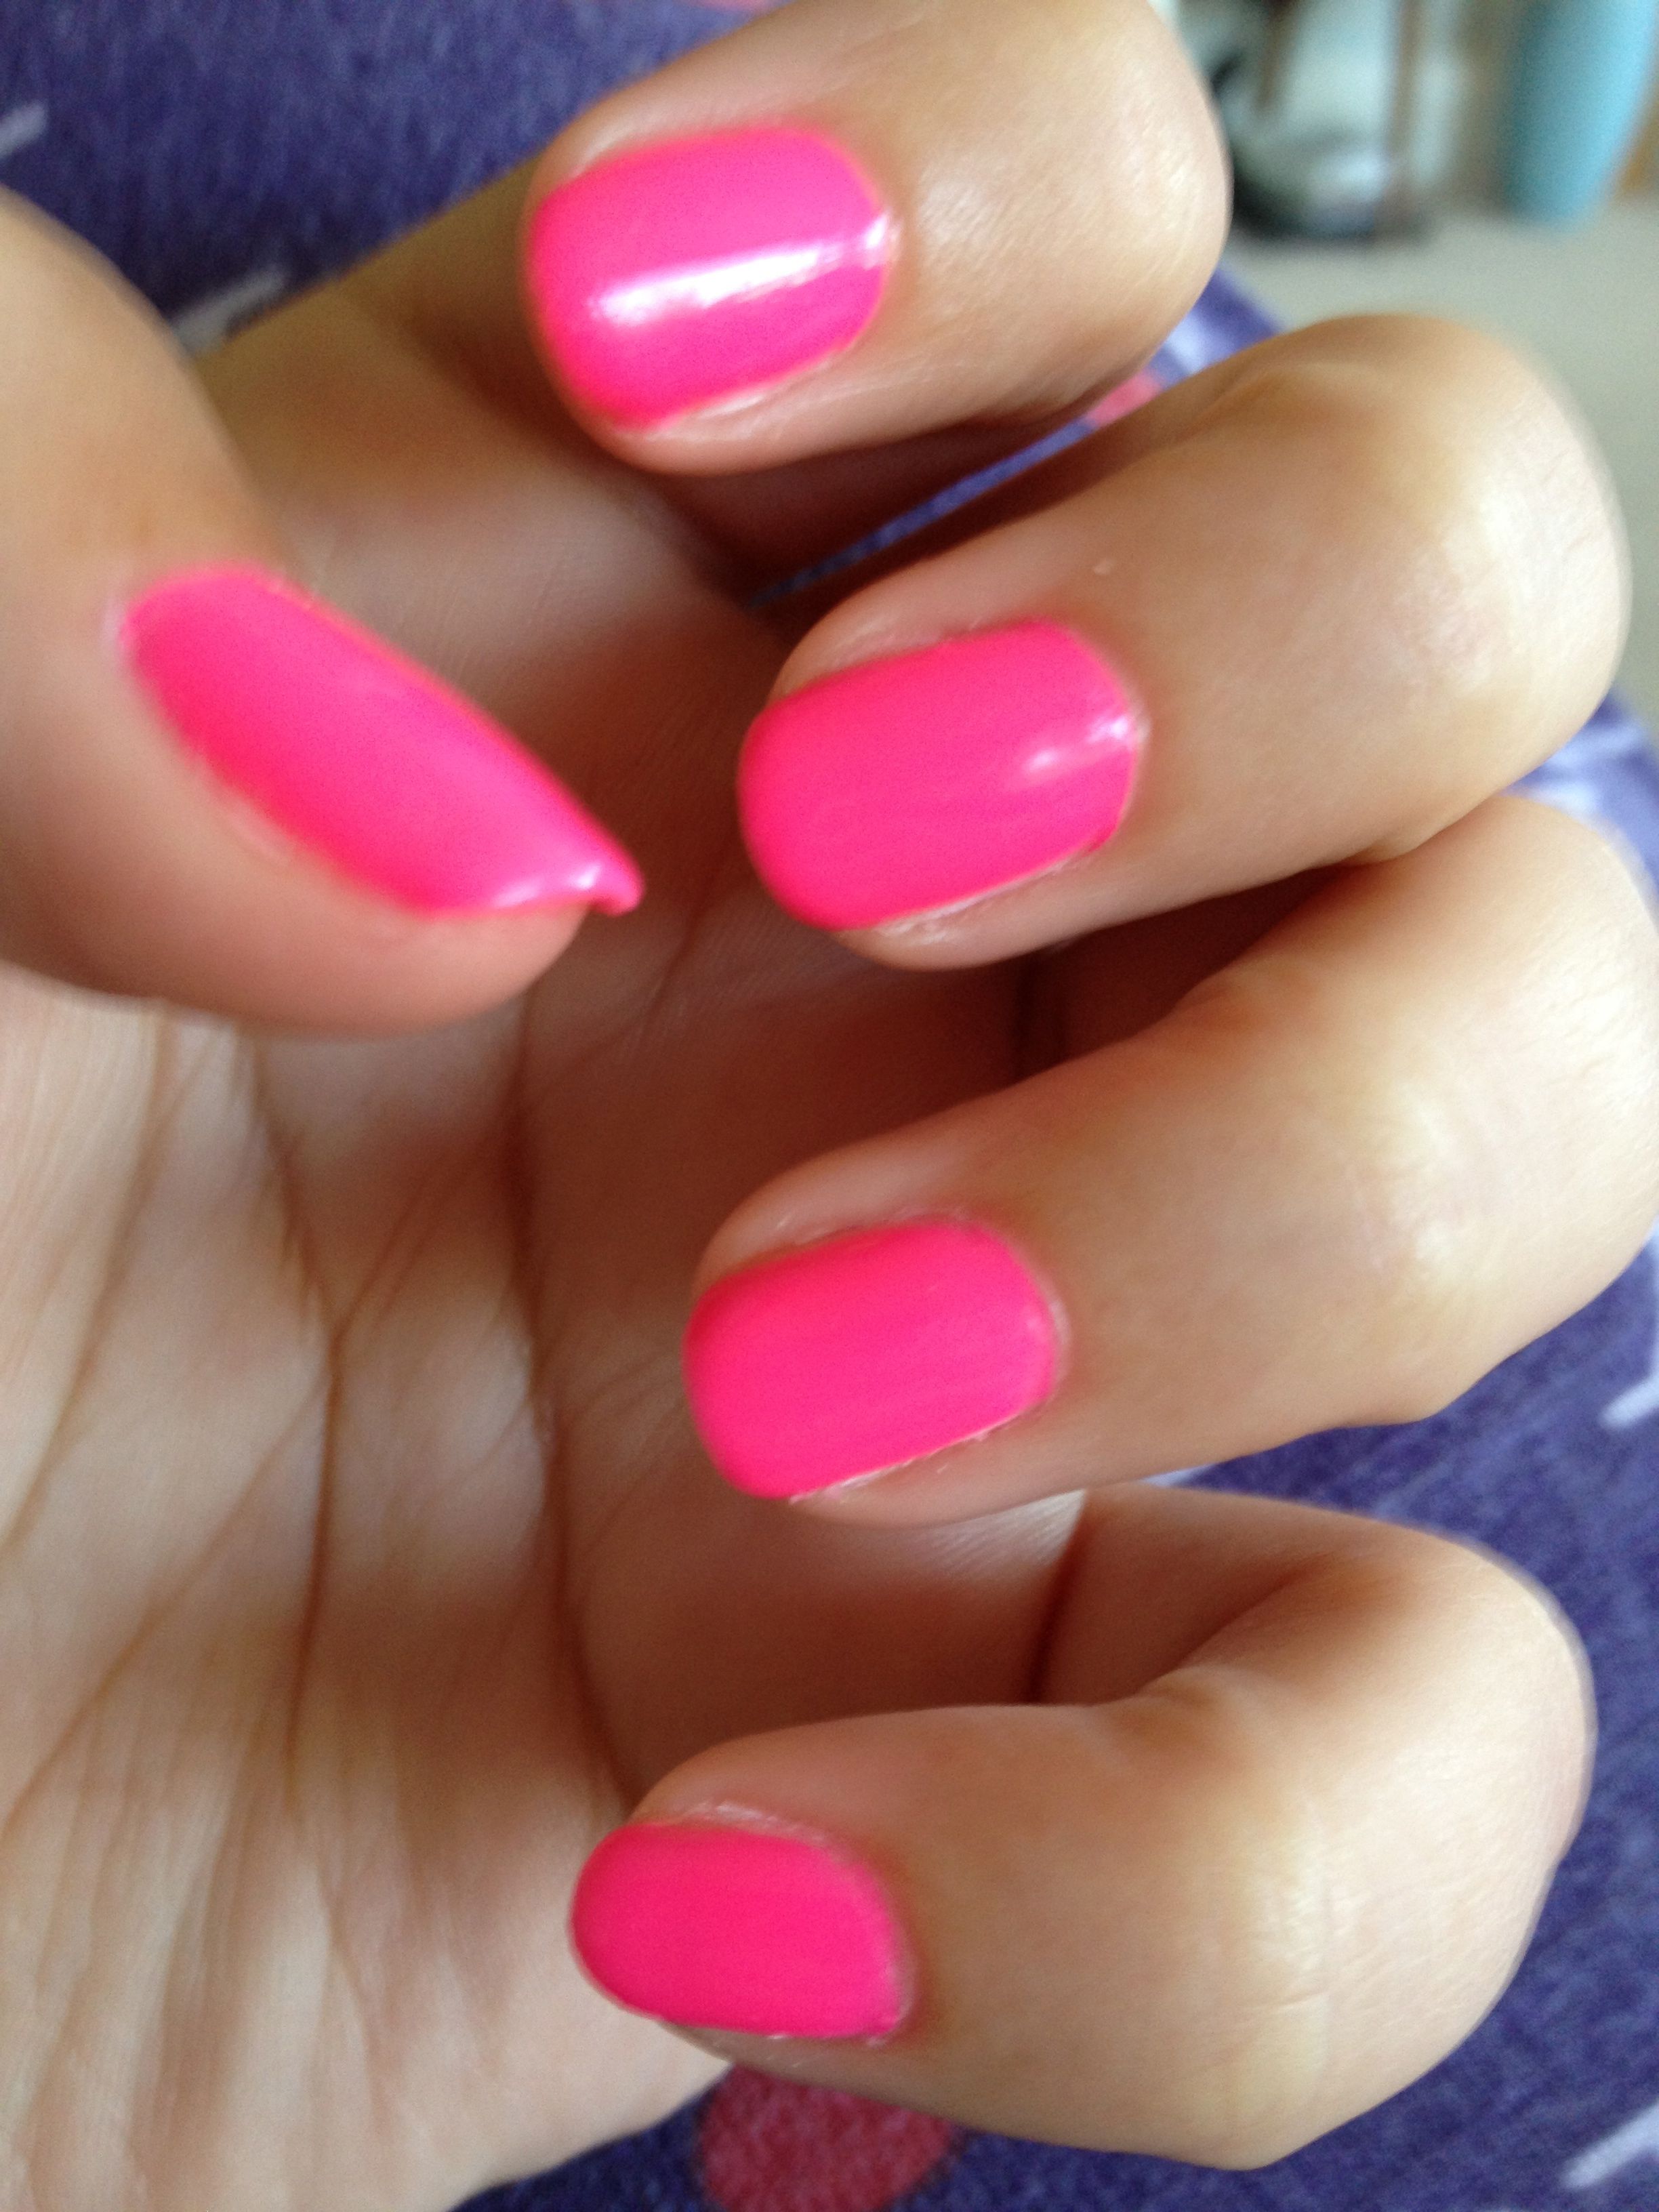 Image result for pink fingernails